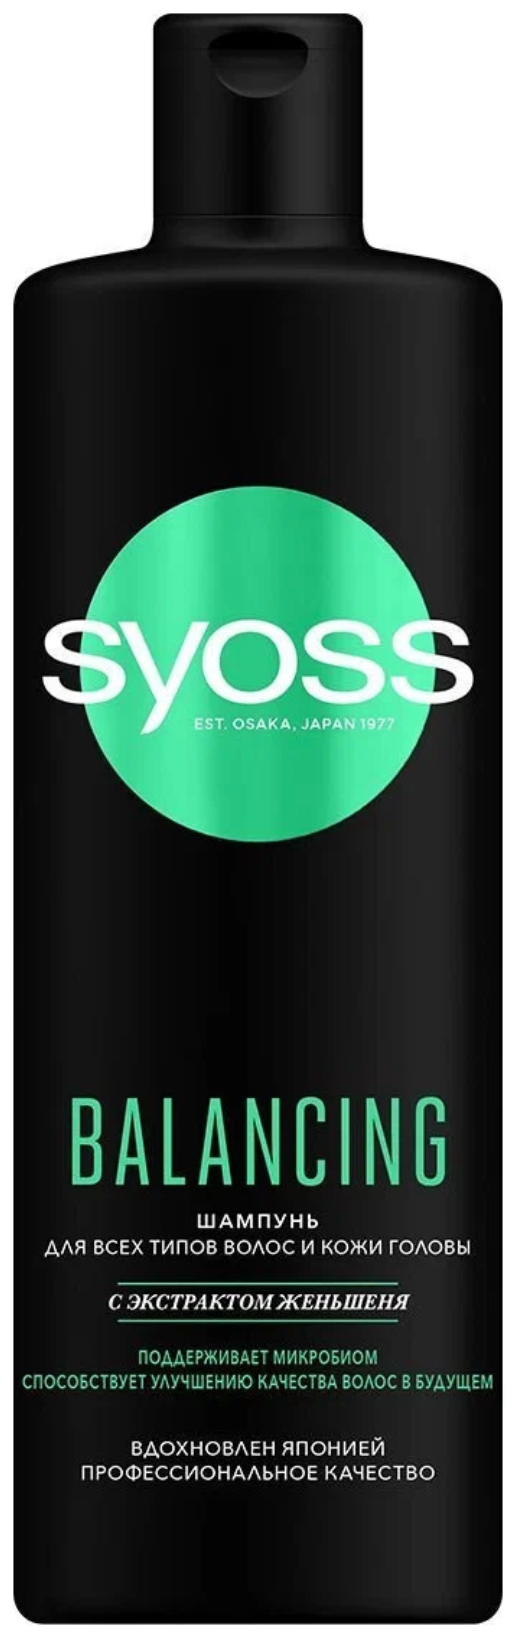 Сьосс / Syoss Balancing - Шампунь для всех типов волос и кожи головы экстракт женьшеня 450 мл